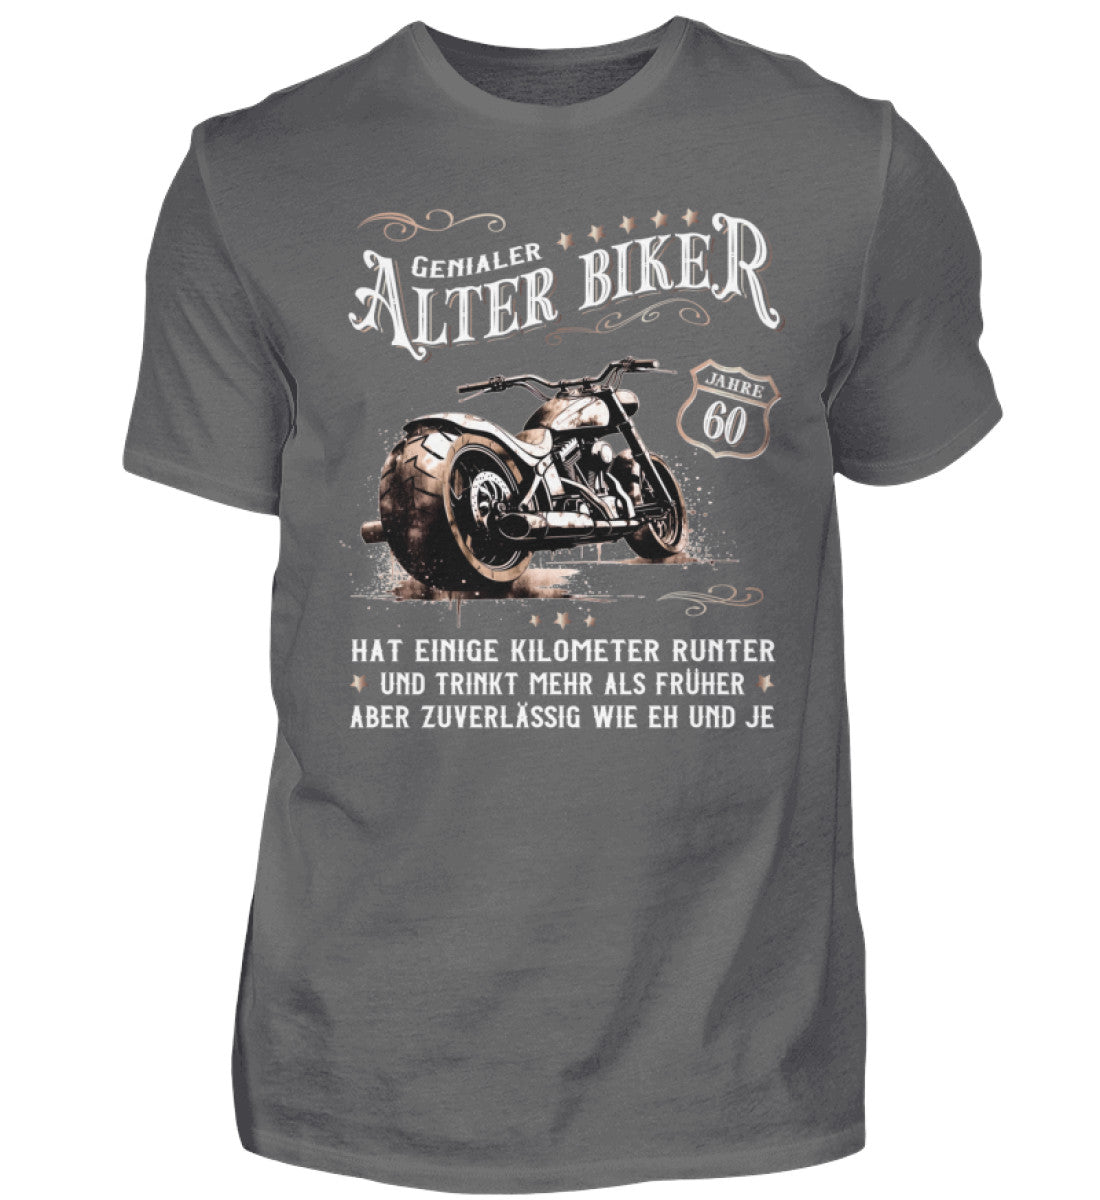 Ein Biker T-Shirt zum Geburtstag für Motorradfahrer von Wingbikers mit dem Aufdruck, Alter Biker - 60 Jahre - Einige Kilometer runter, trinkt mehr - aber zuverlässig wie eh und je - in grau.